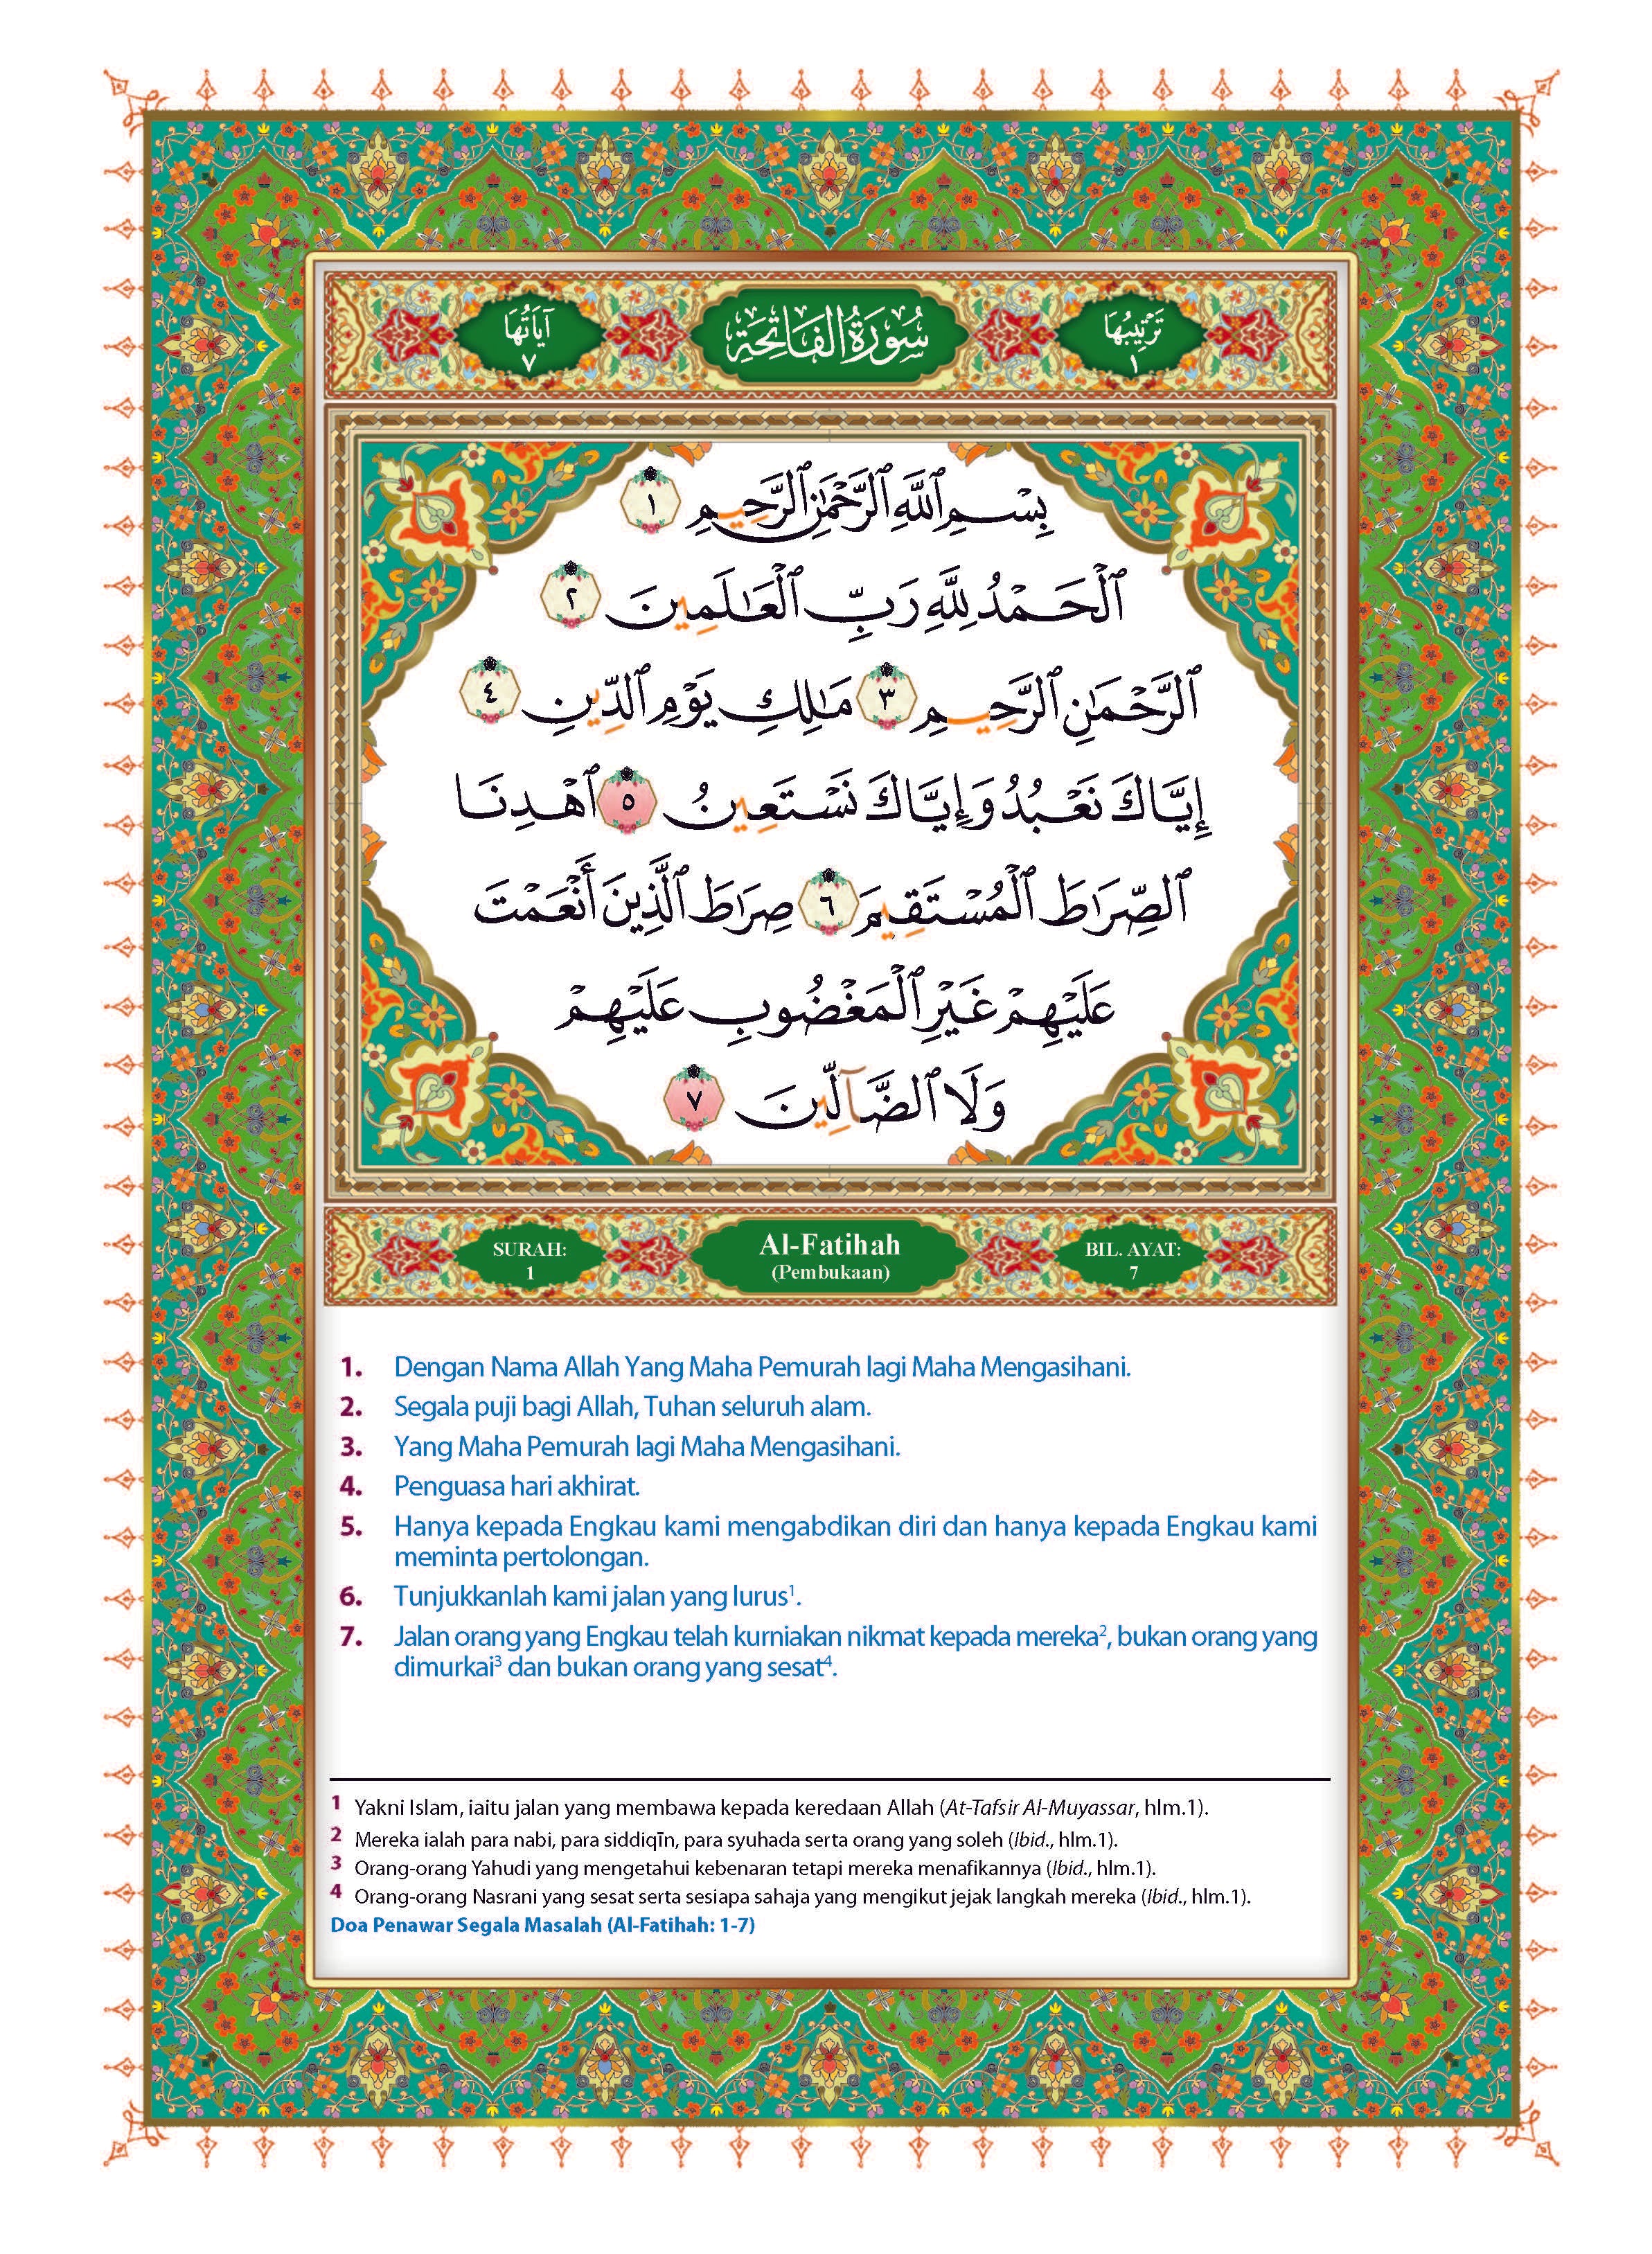 Al-Quran Al-Karim Dan Terjemahan Al-Kamil Dengan Panduan Waqaf & Ibtida’ (Tagging) - (TBAQ1063)